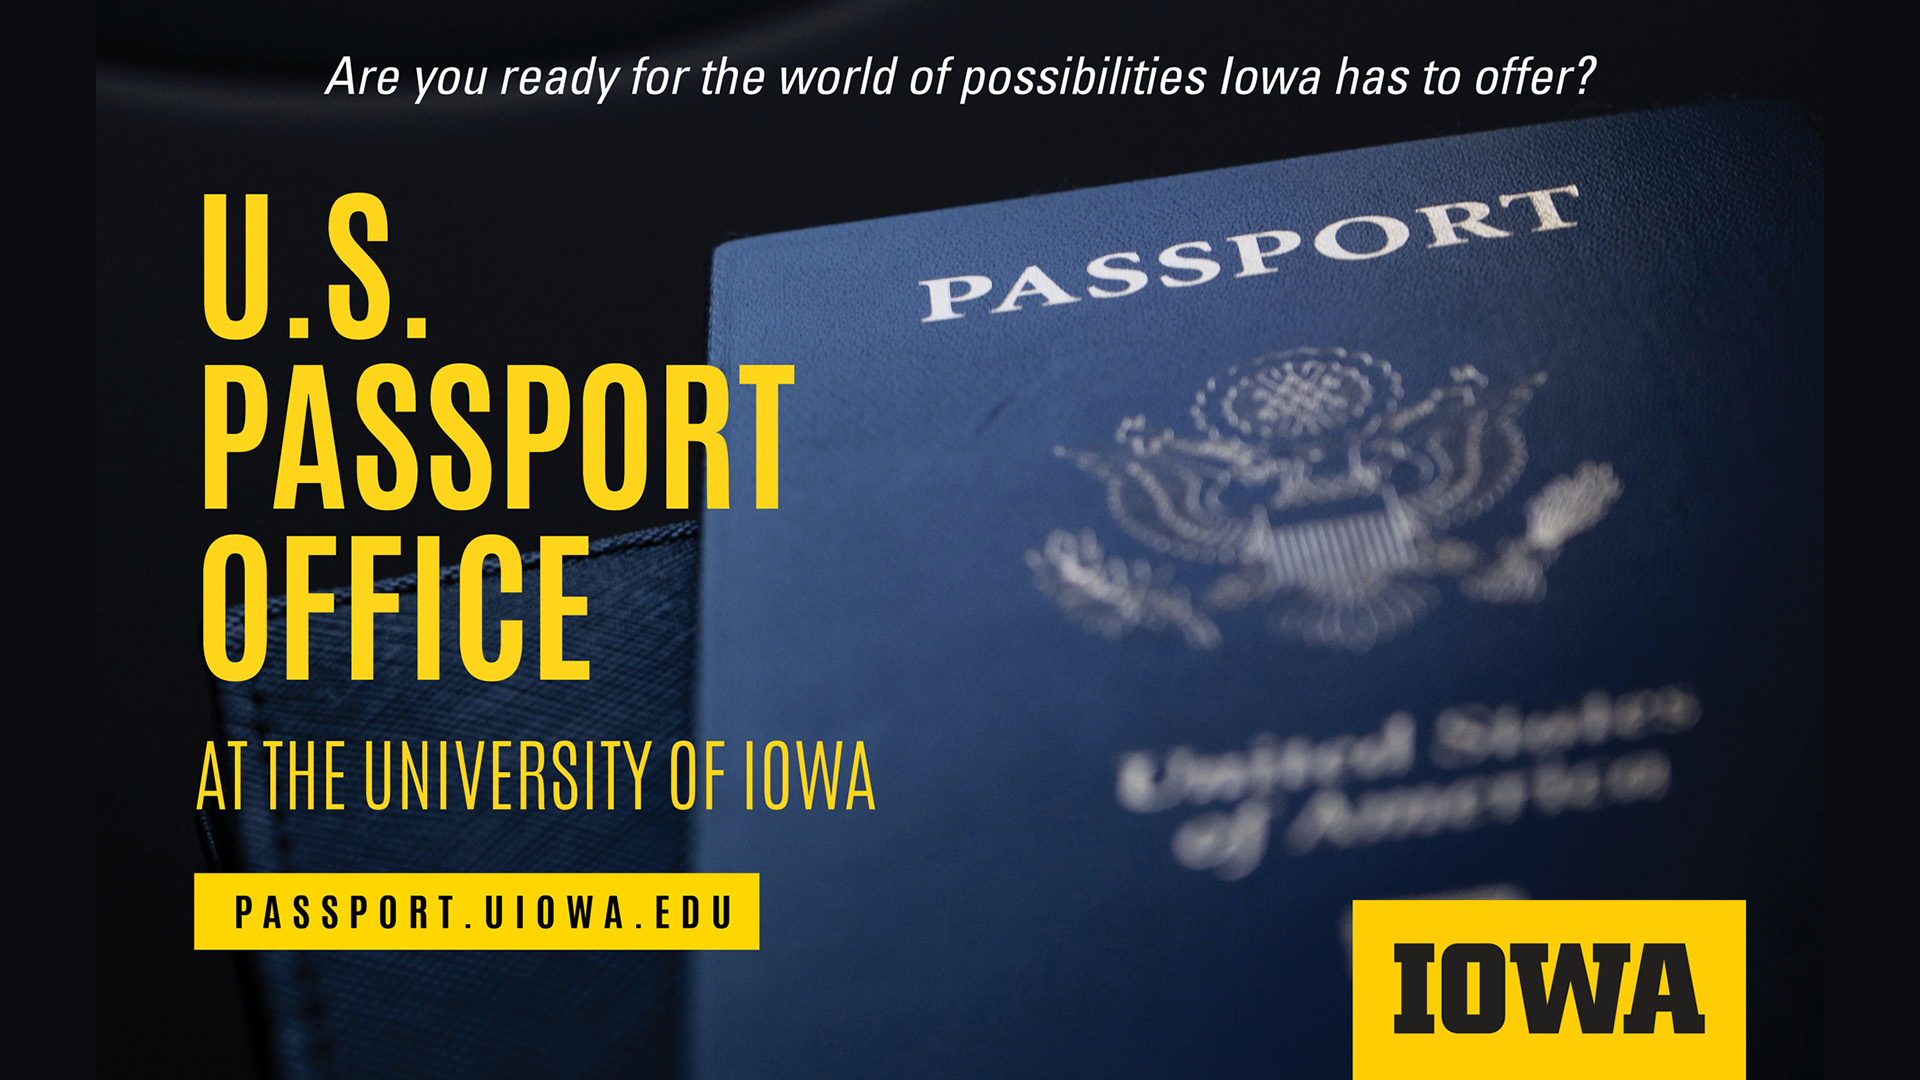 U,S Passport Office at the University of Iowa. More information at passport.uiowa.edu